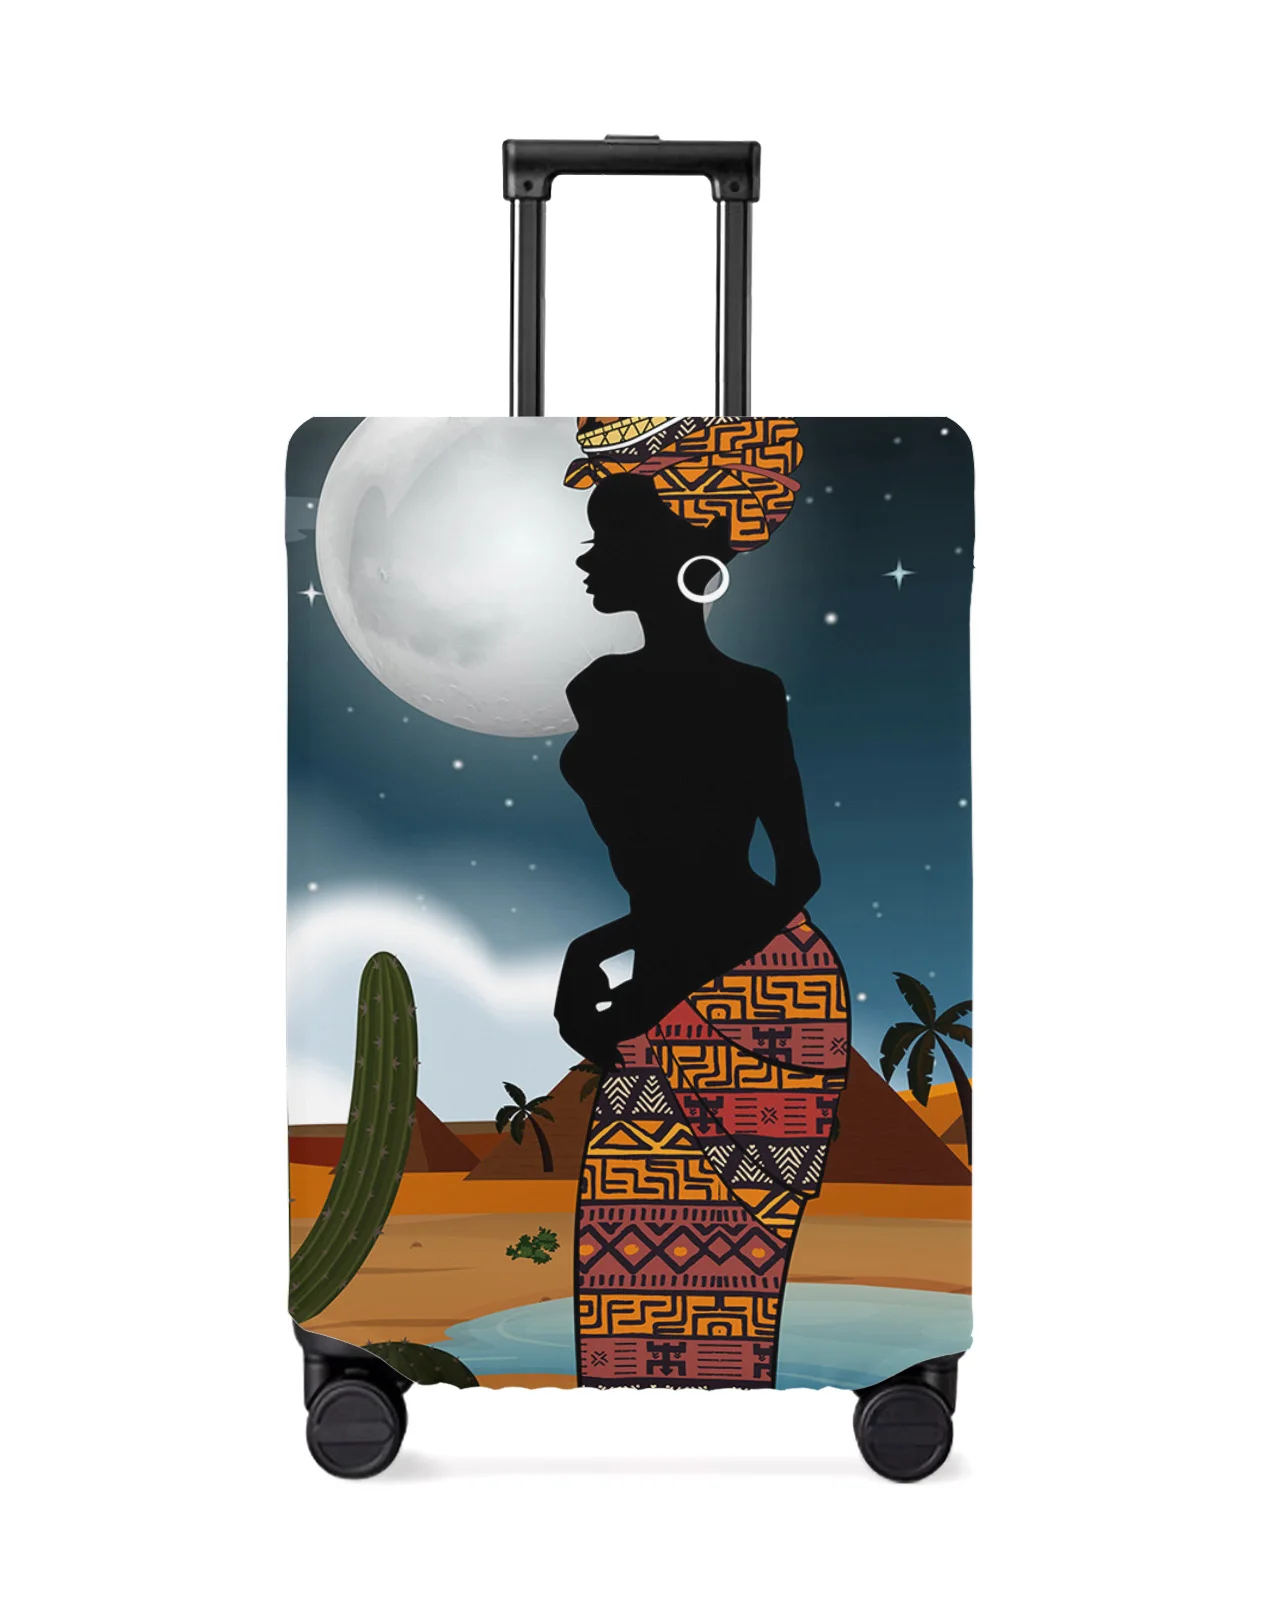 african-woman-desert-cactus-night-travel-bagagli-copertura-protettiva-accessori-da-viaggio-valigia-custodia-antipolvere-elastica-proteggi-la-manica